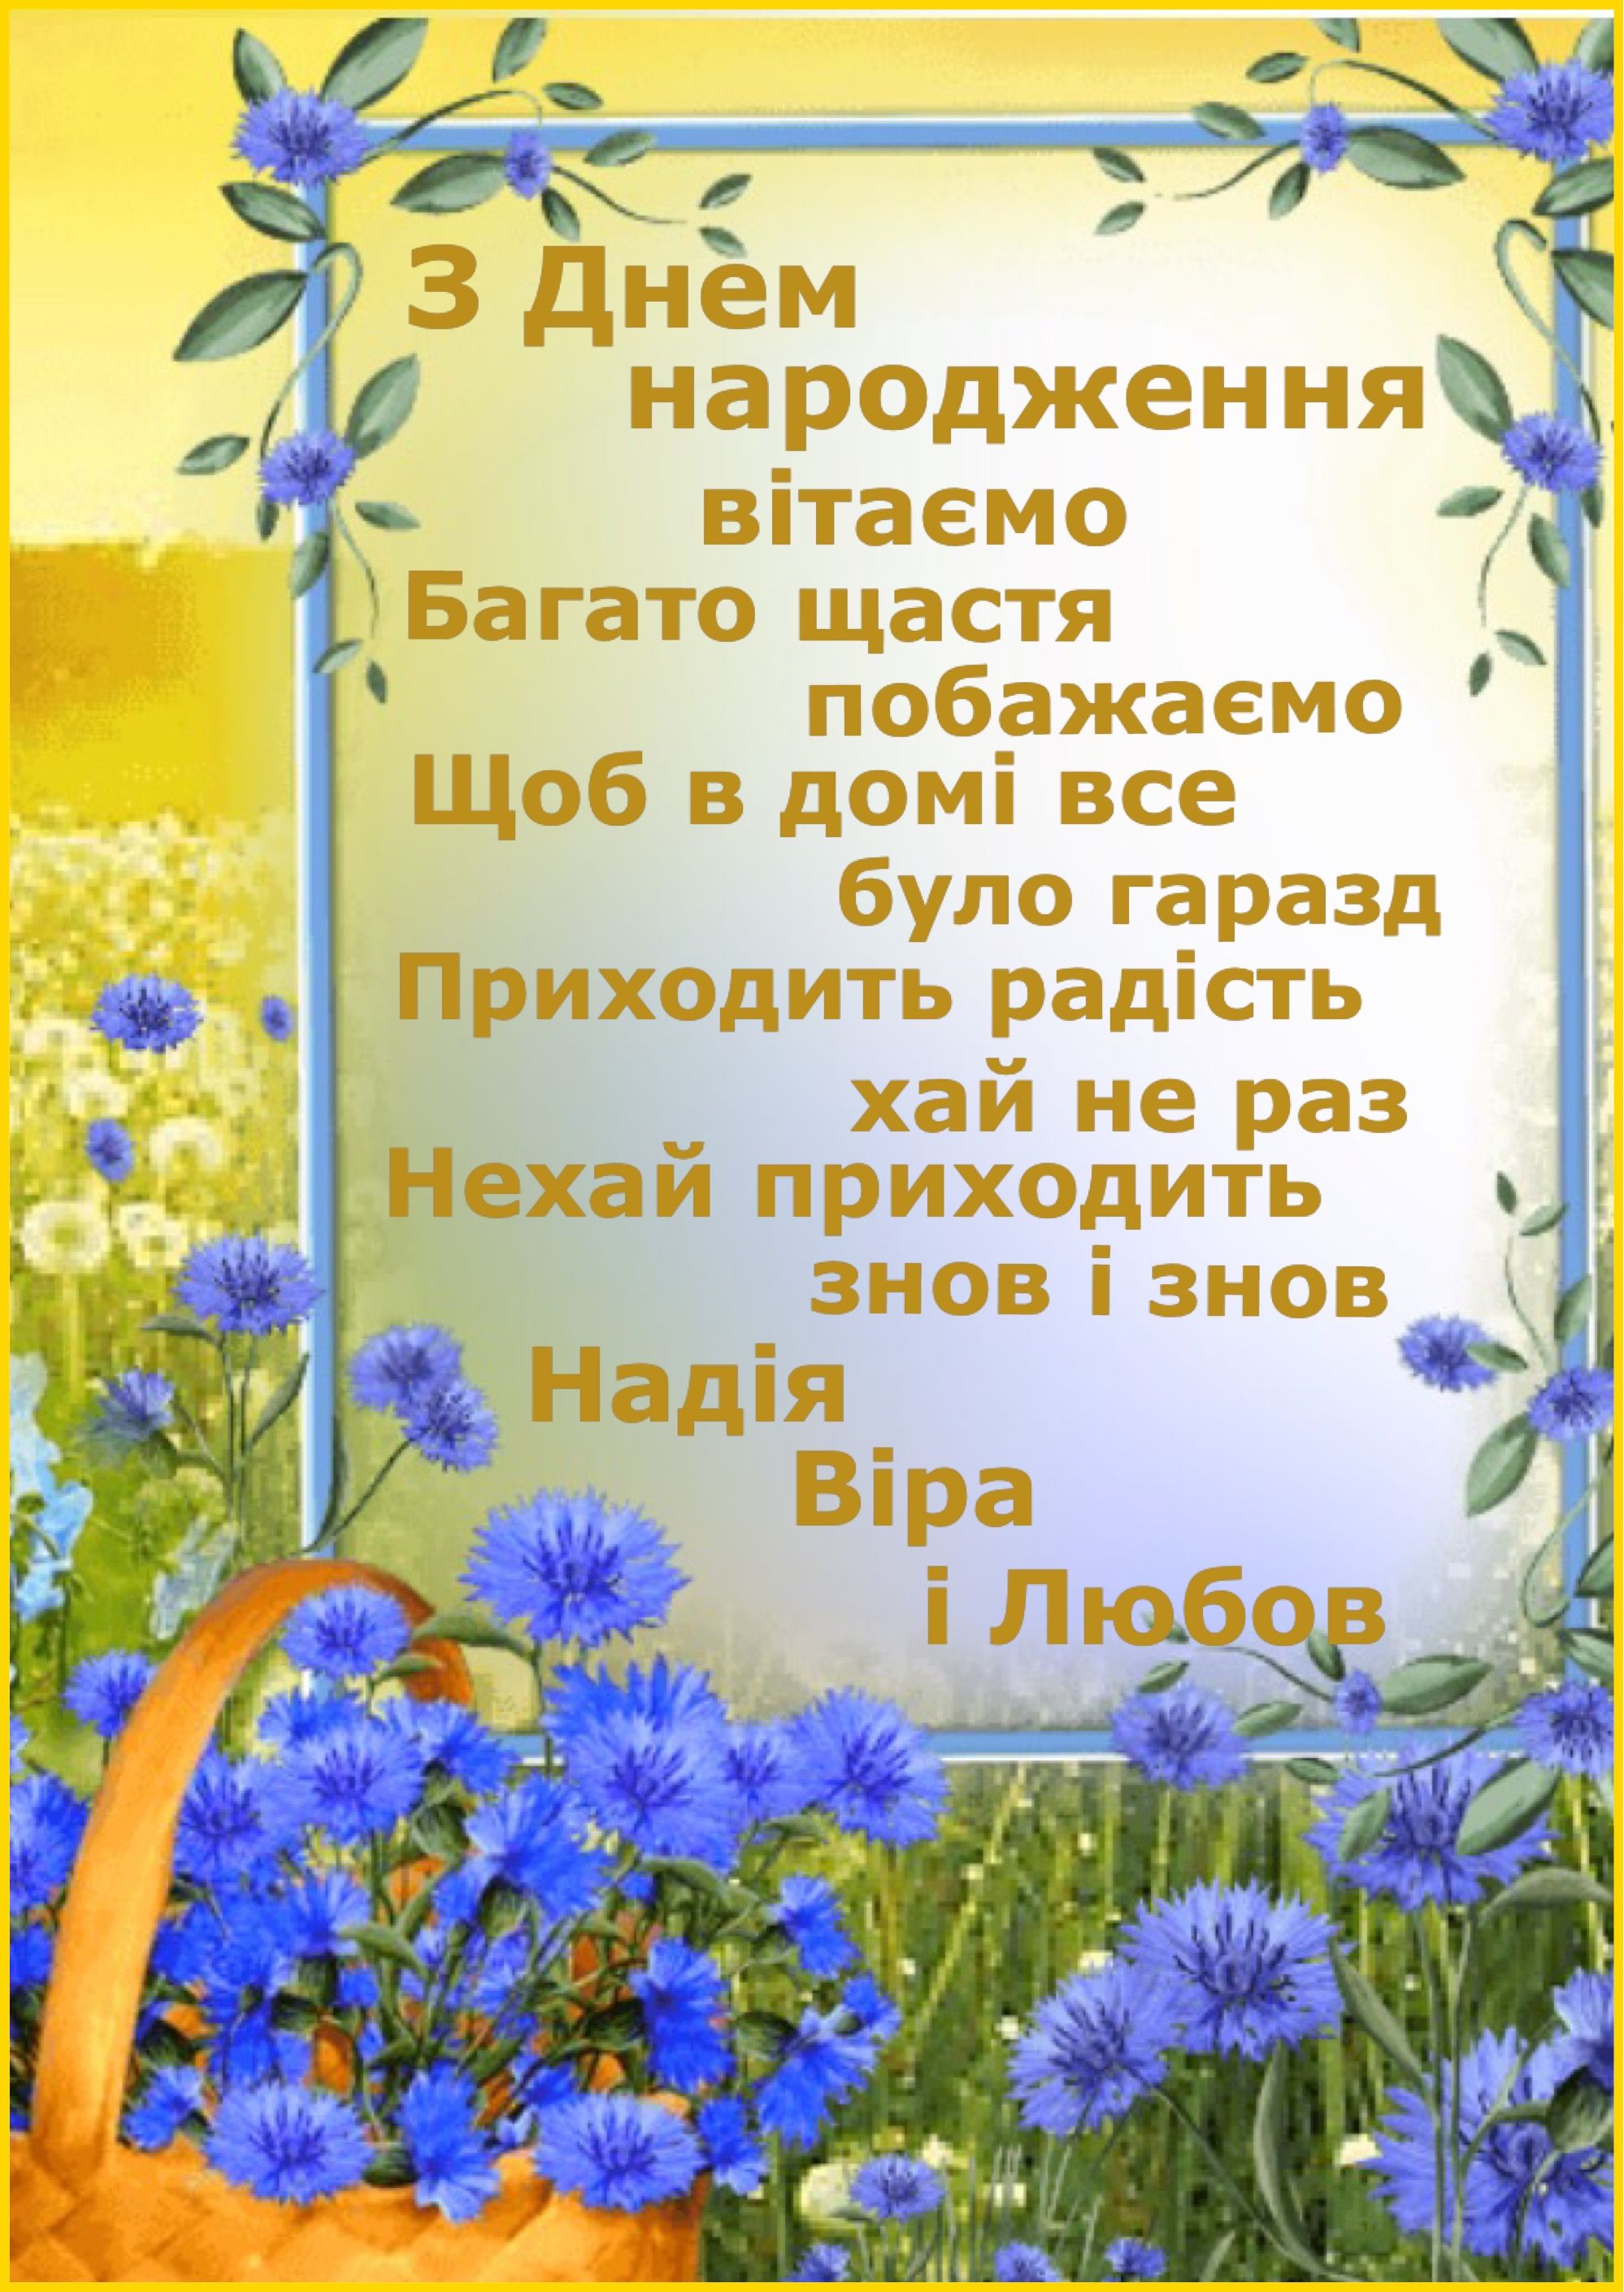 Привітати онучку з днем народження українською мовою
